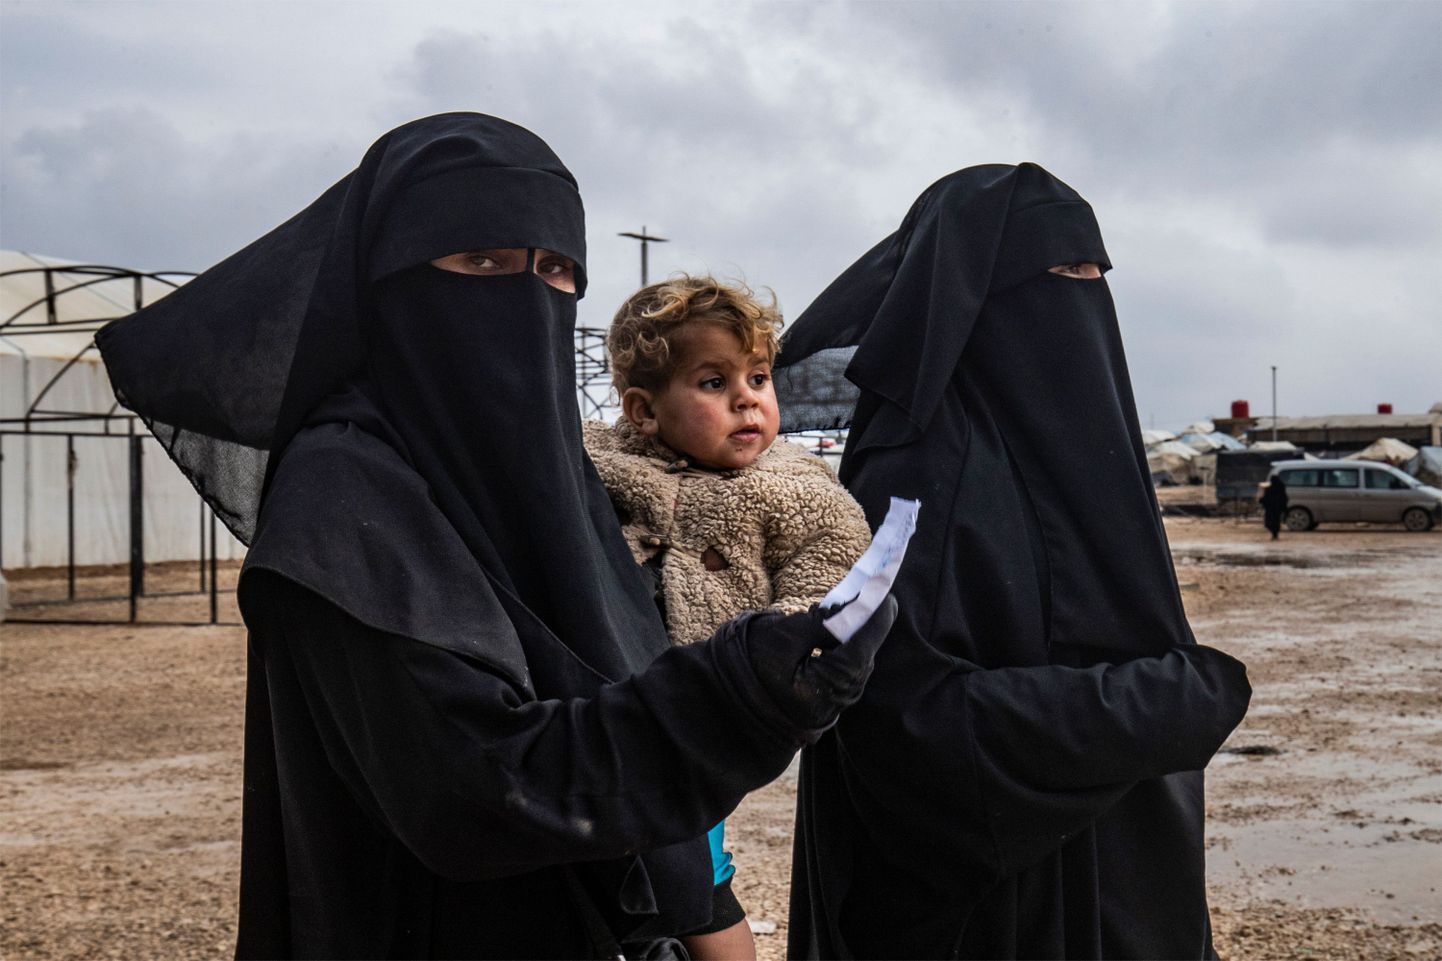 ISISe võitlejate naised Al-Holi laagris.